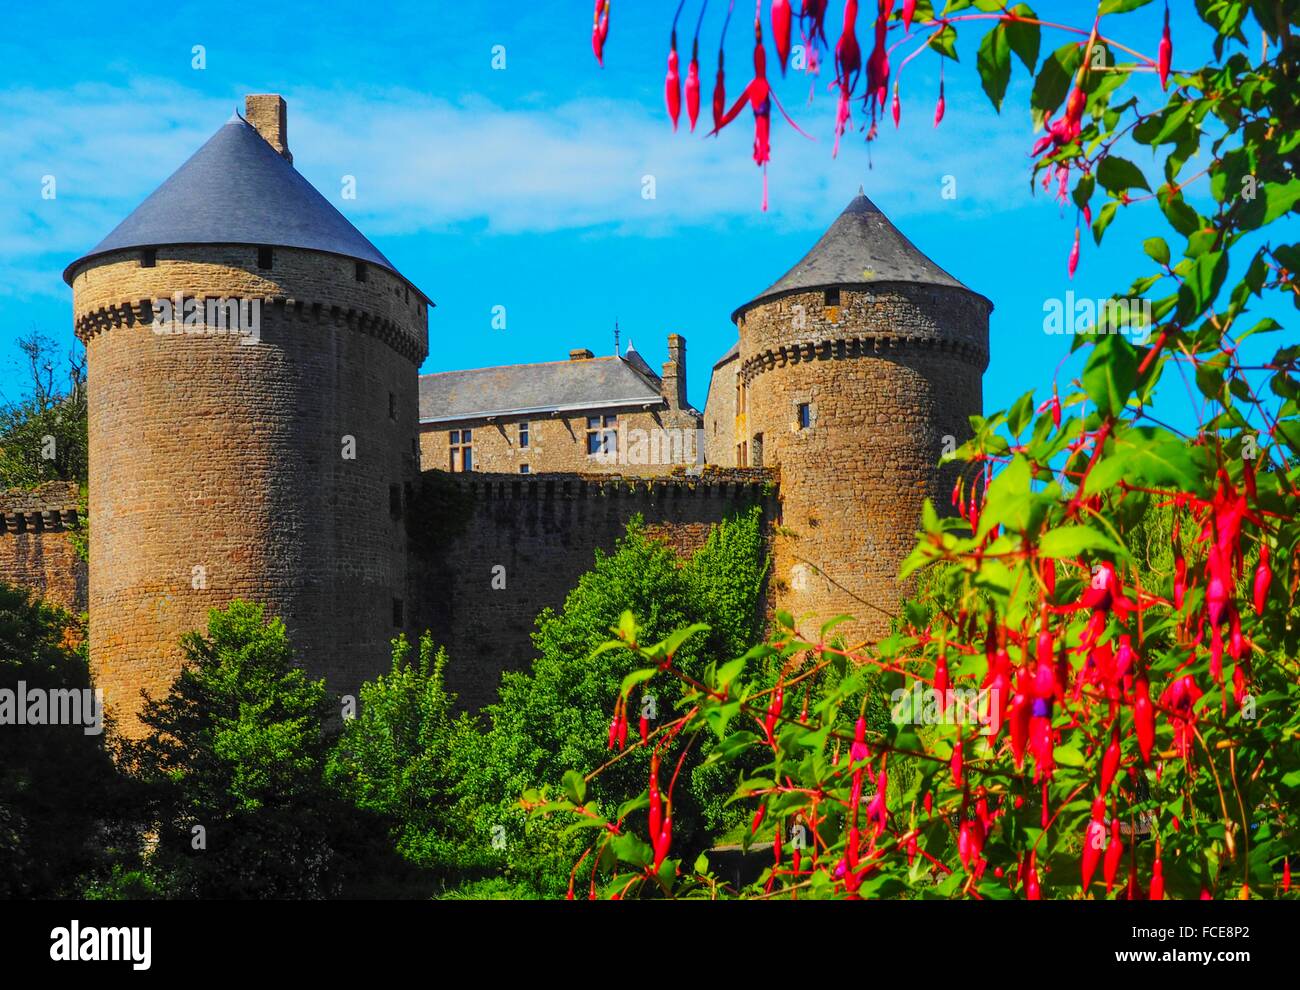 France- Pays de Loire- Mayenne- XII, XIVc. castle of Lassay les Chateaux. Stock Photo